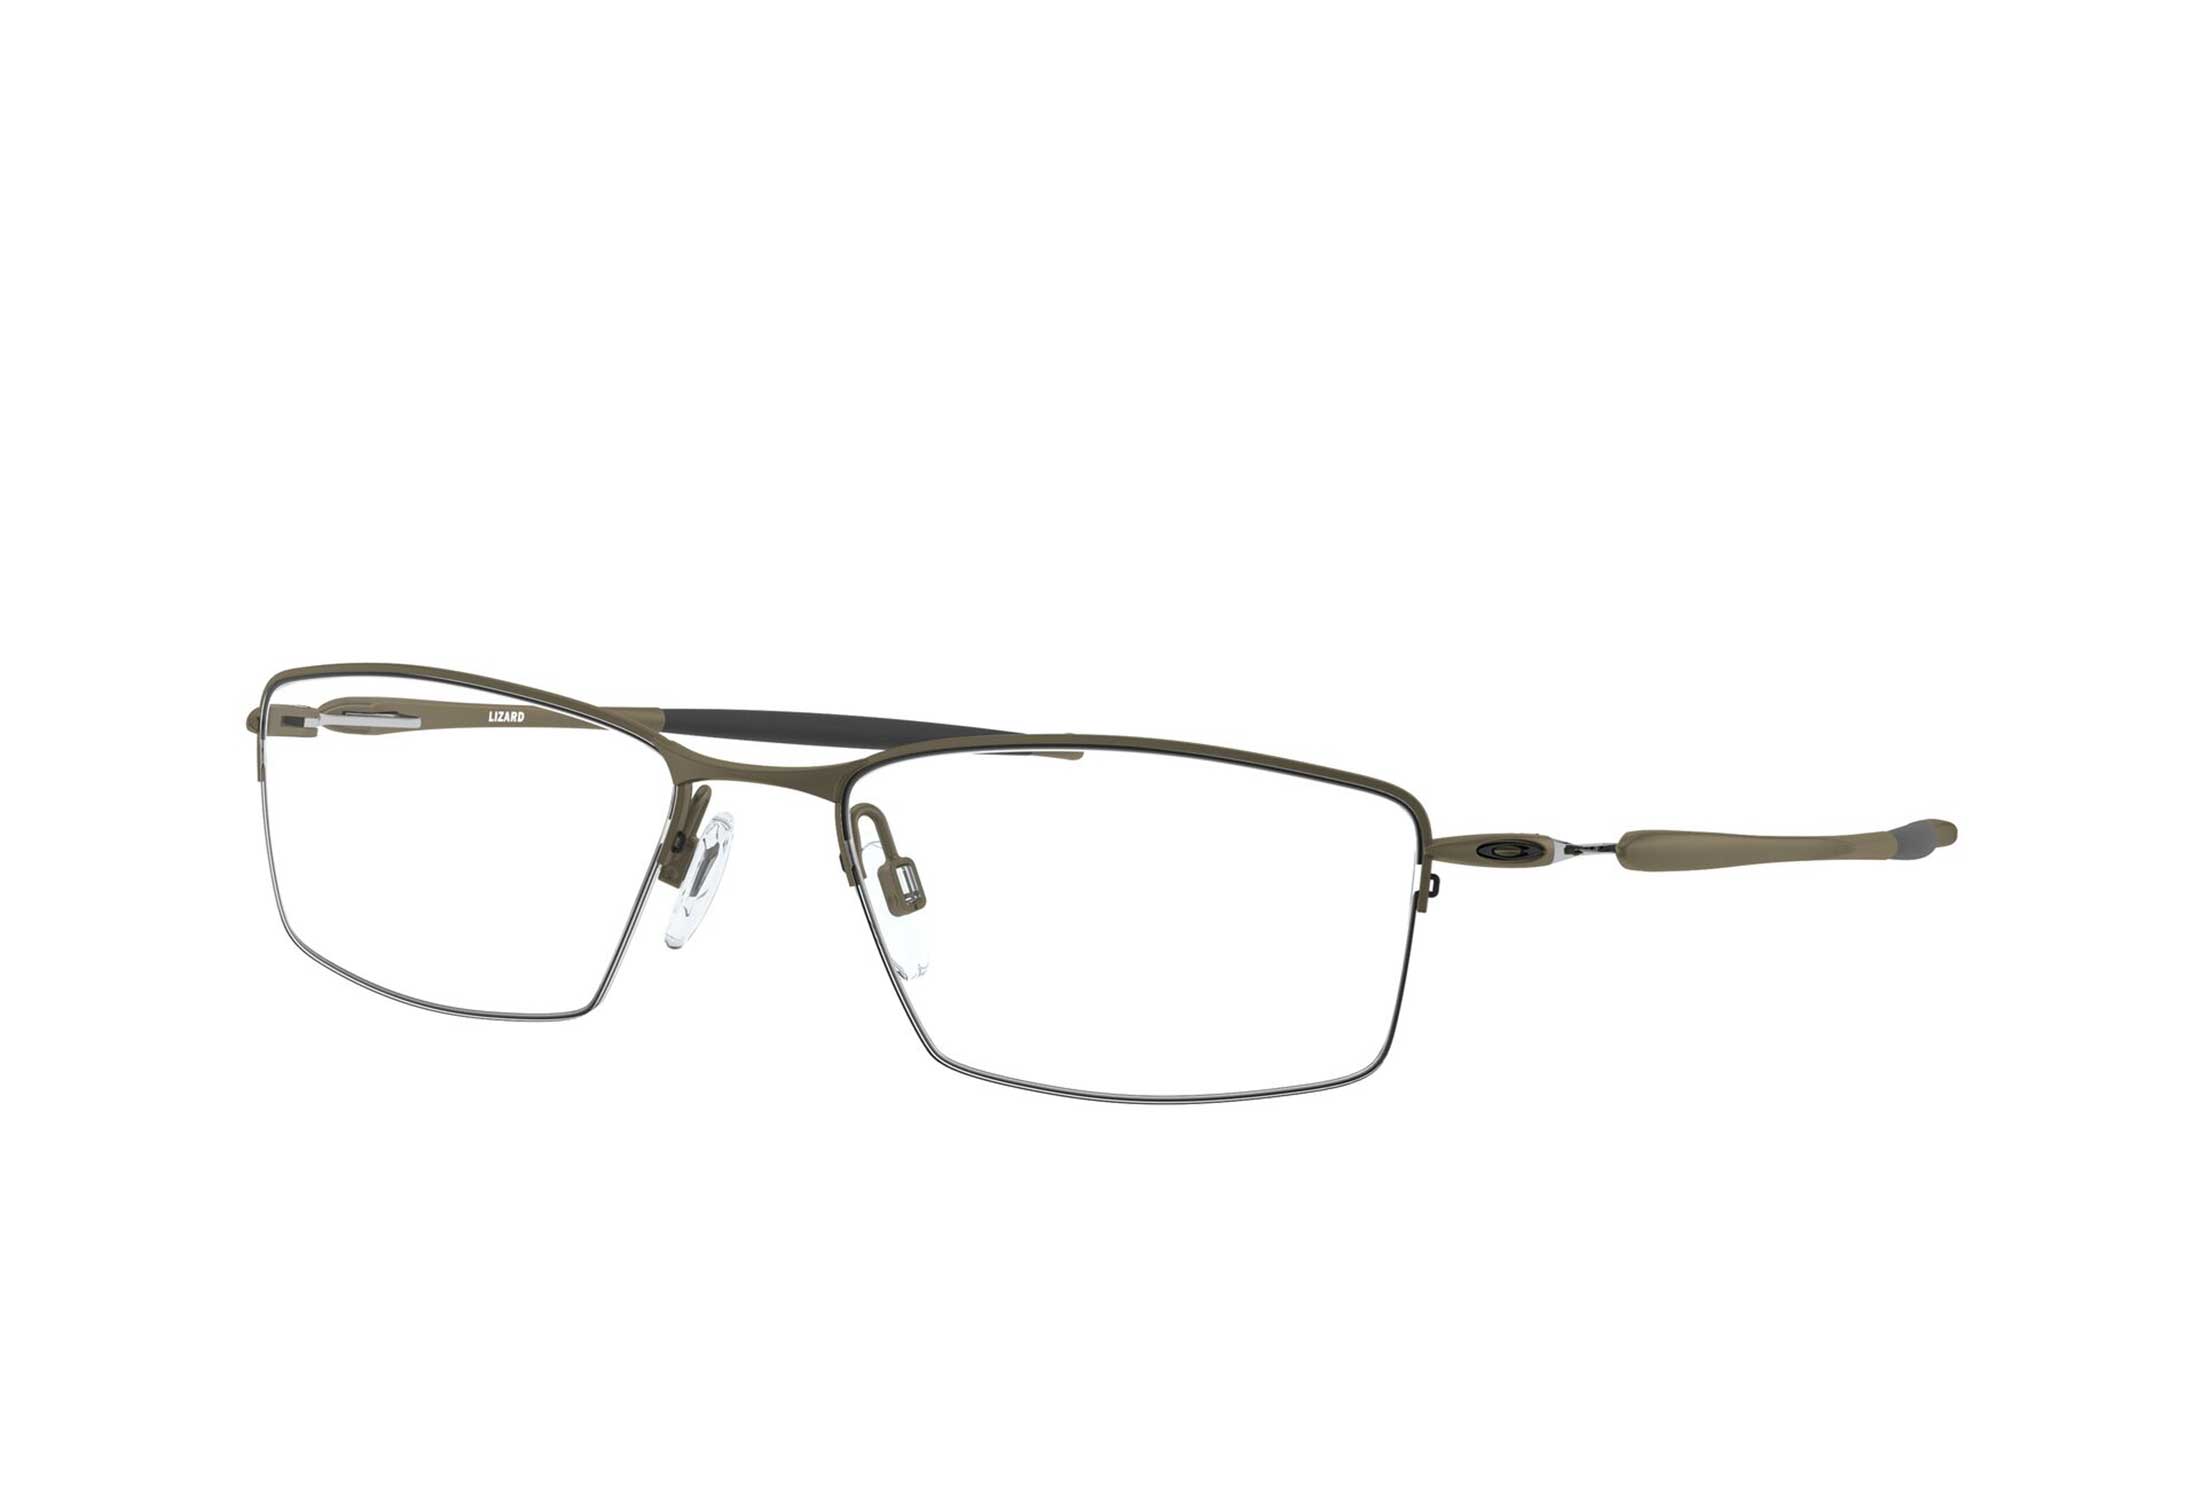 Oakley briller - Lizard - Brun, Medium Halv ramme i Metall - Rektangulære